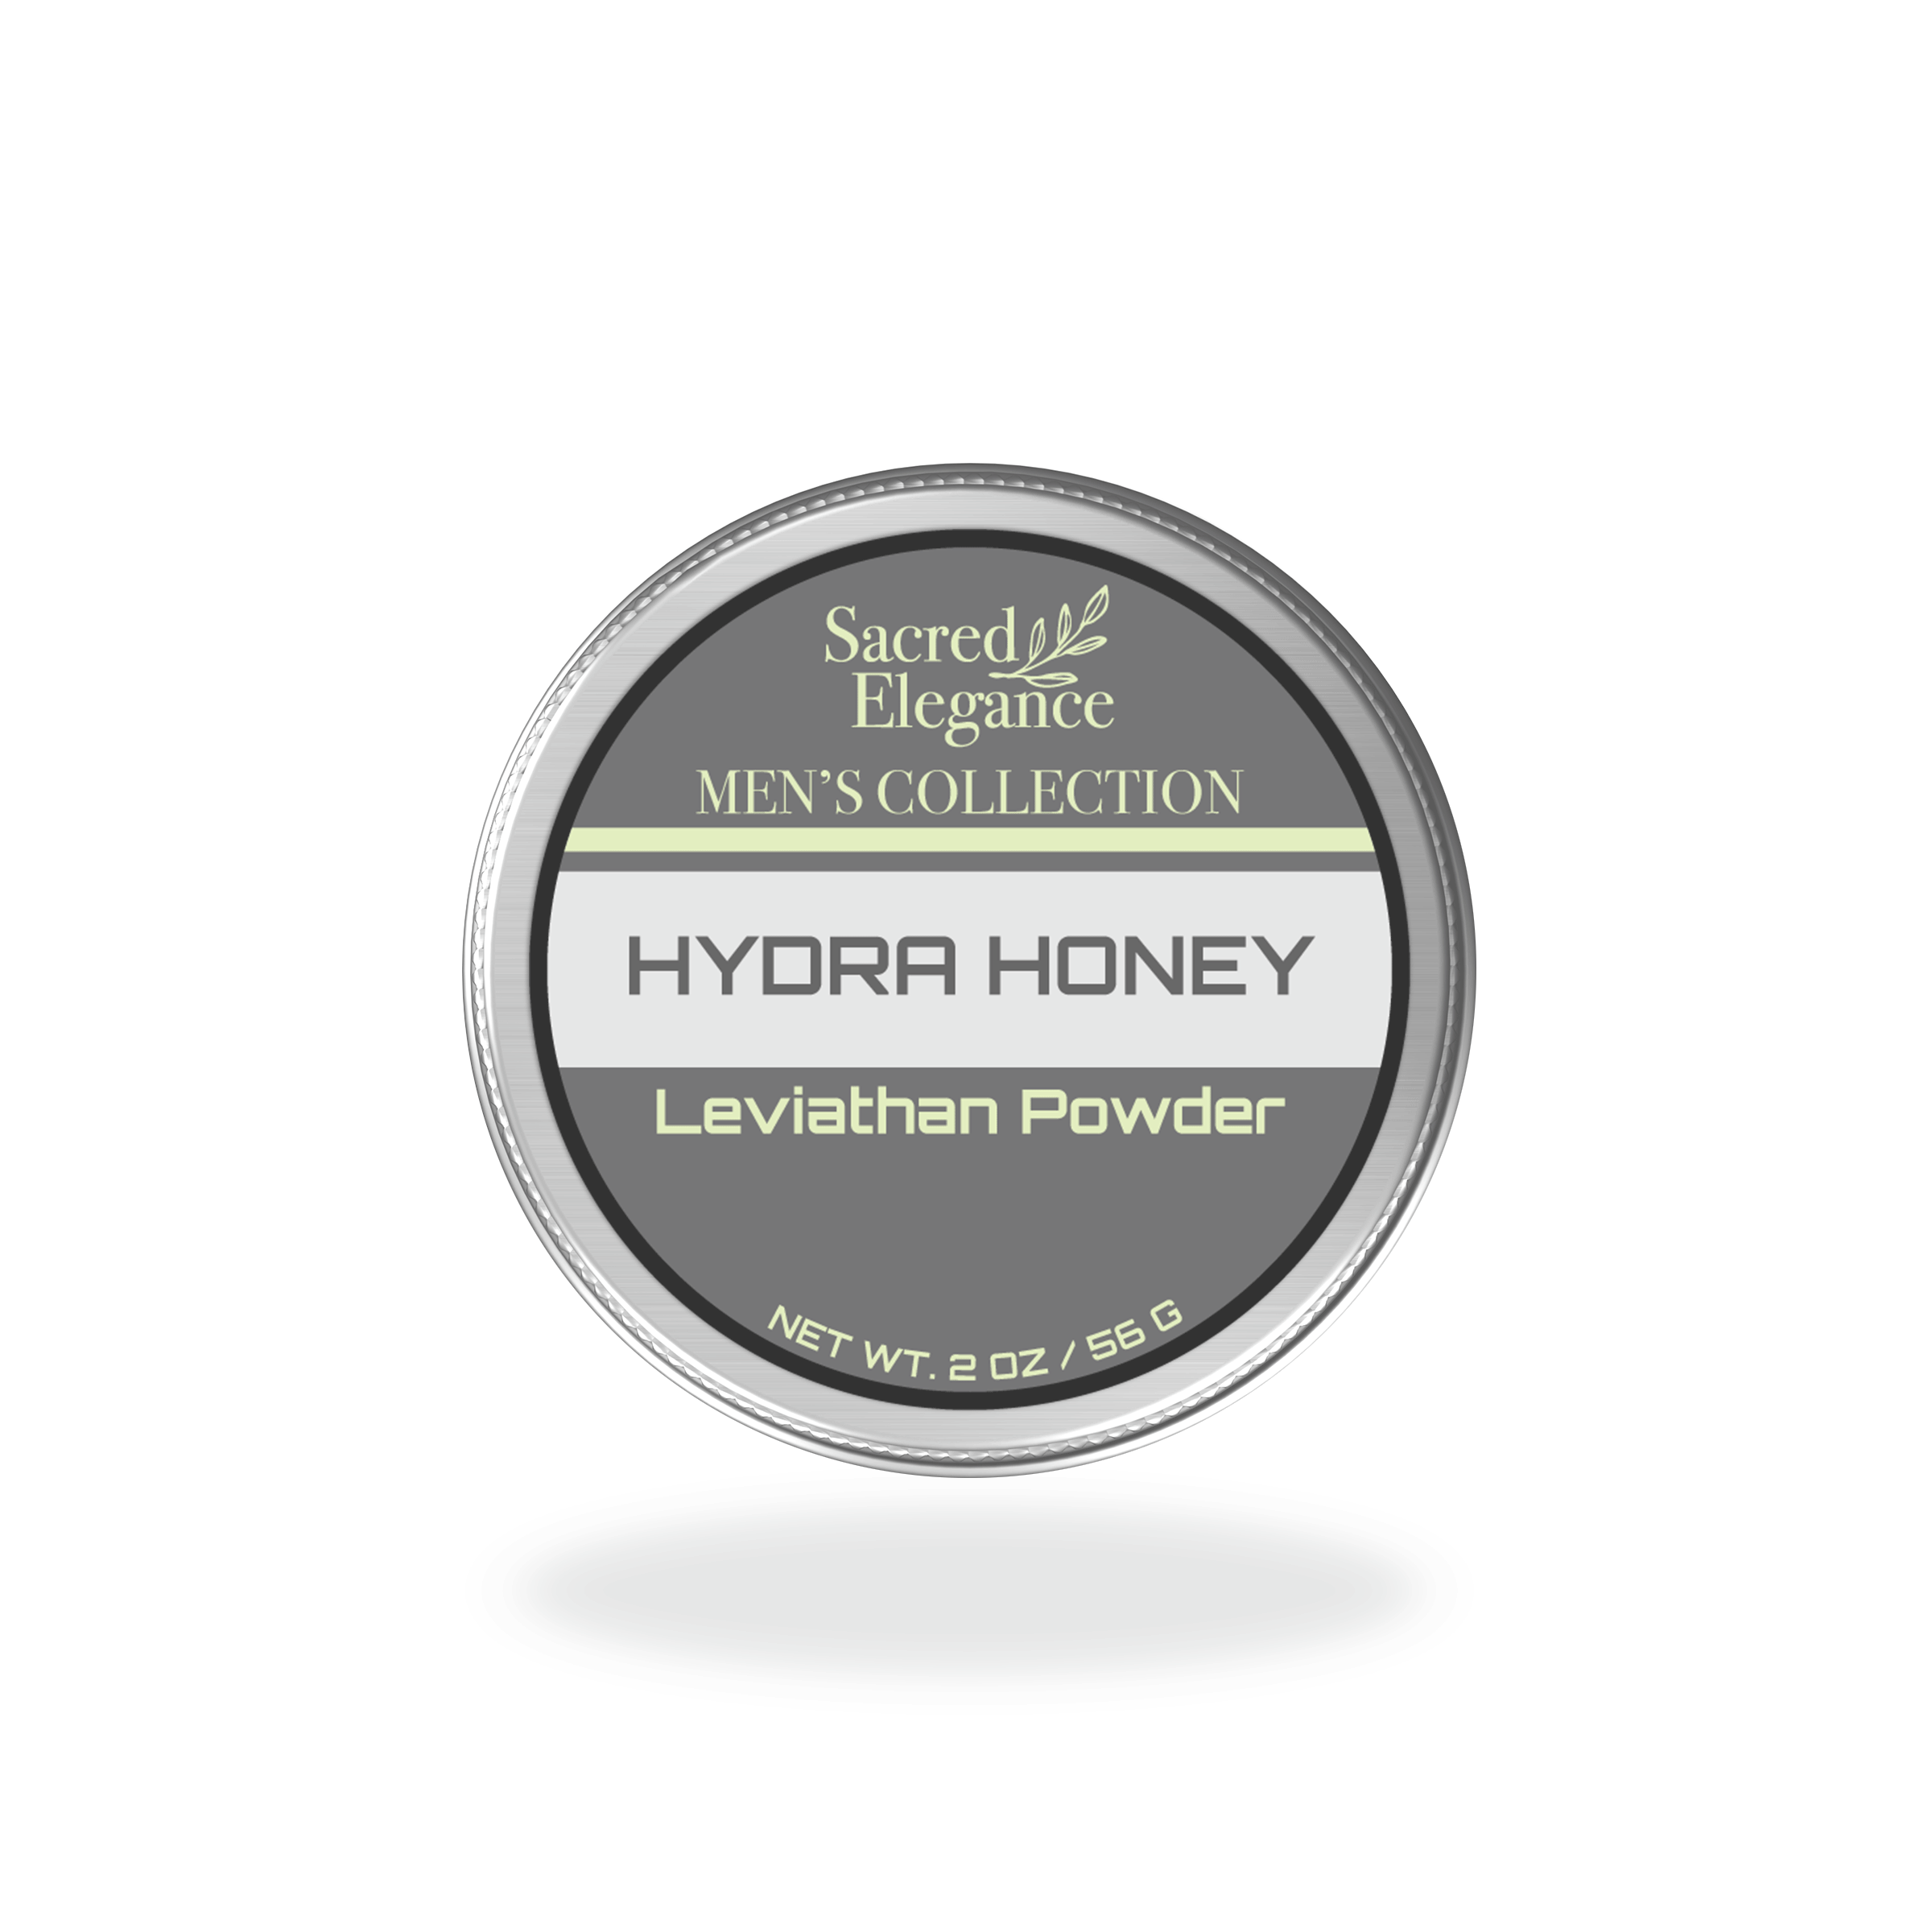 Leviathan Powder Hydra Honey "Wax"